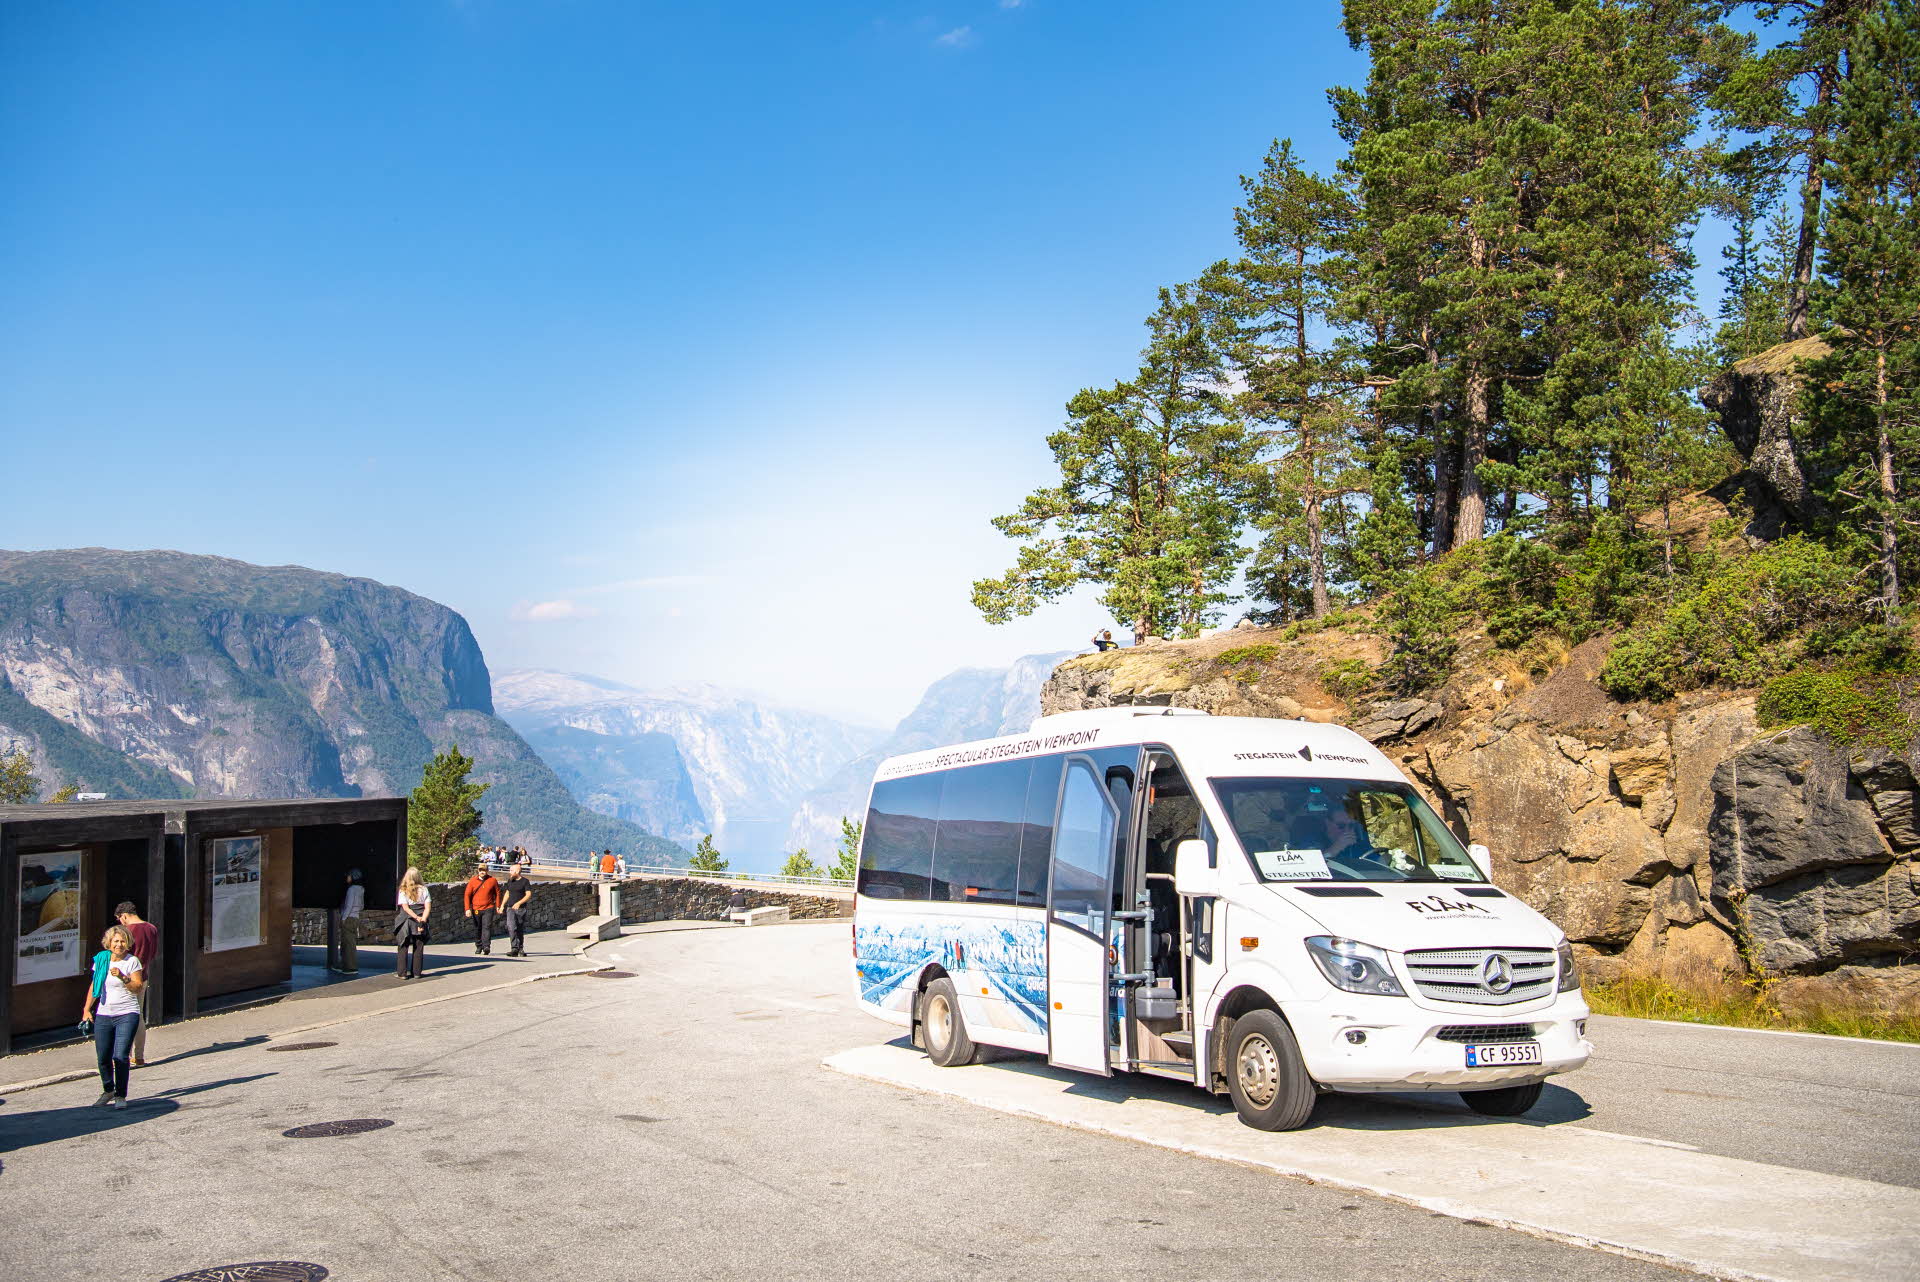 松林の隣のシャトルバスと、山々や青空の景色。